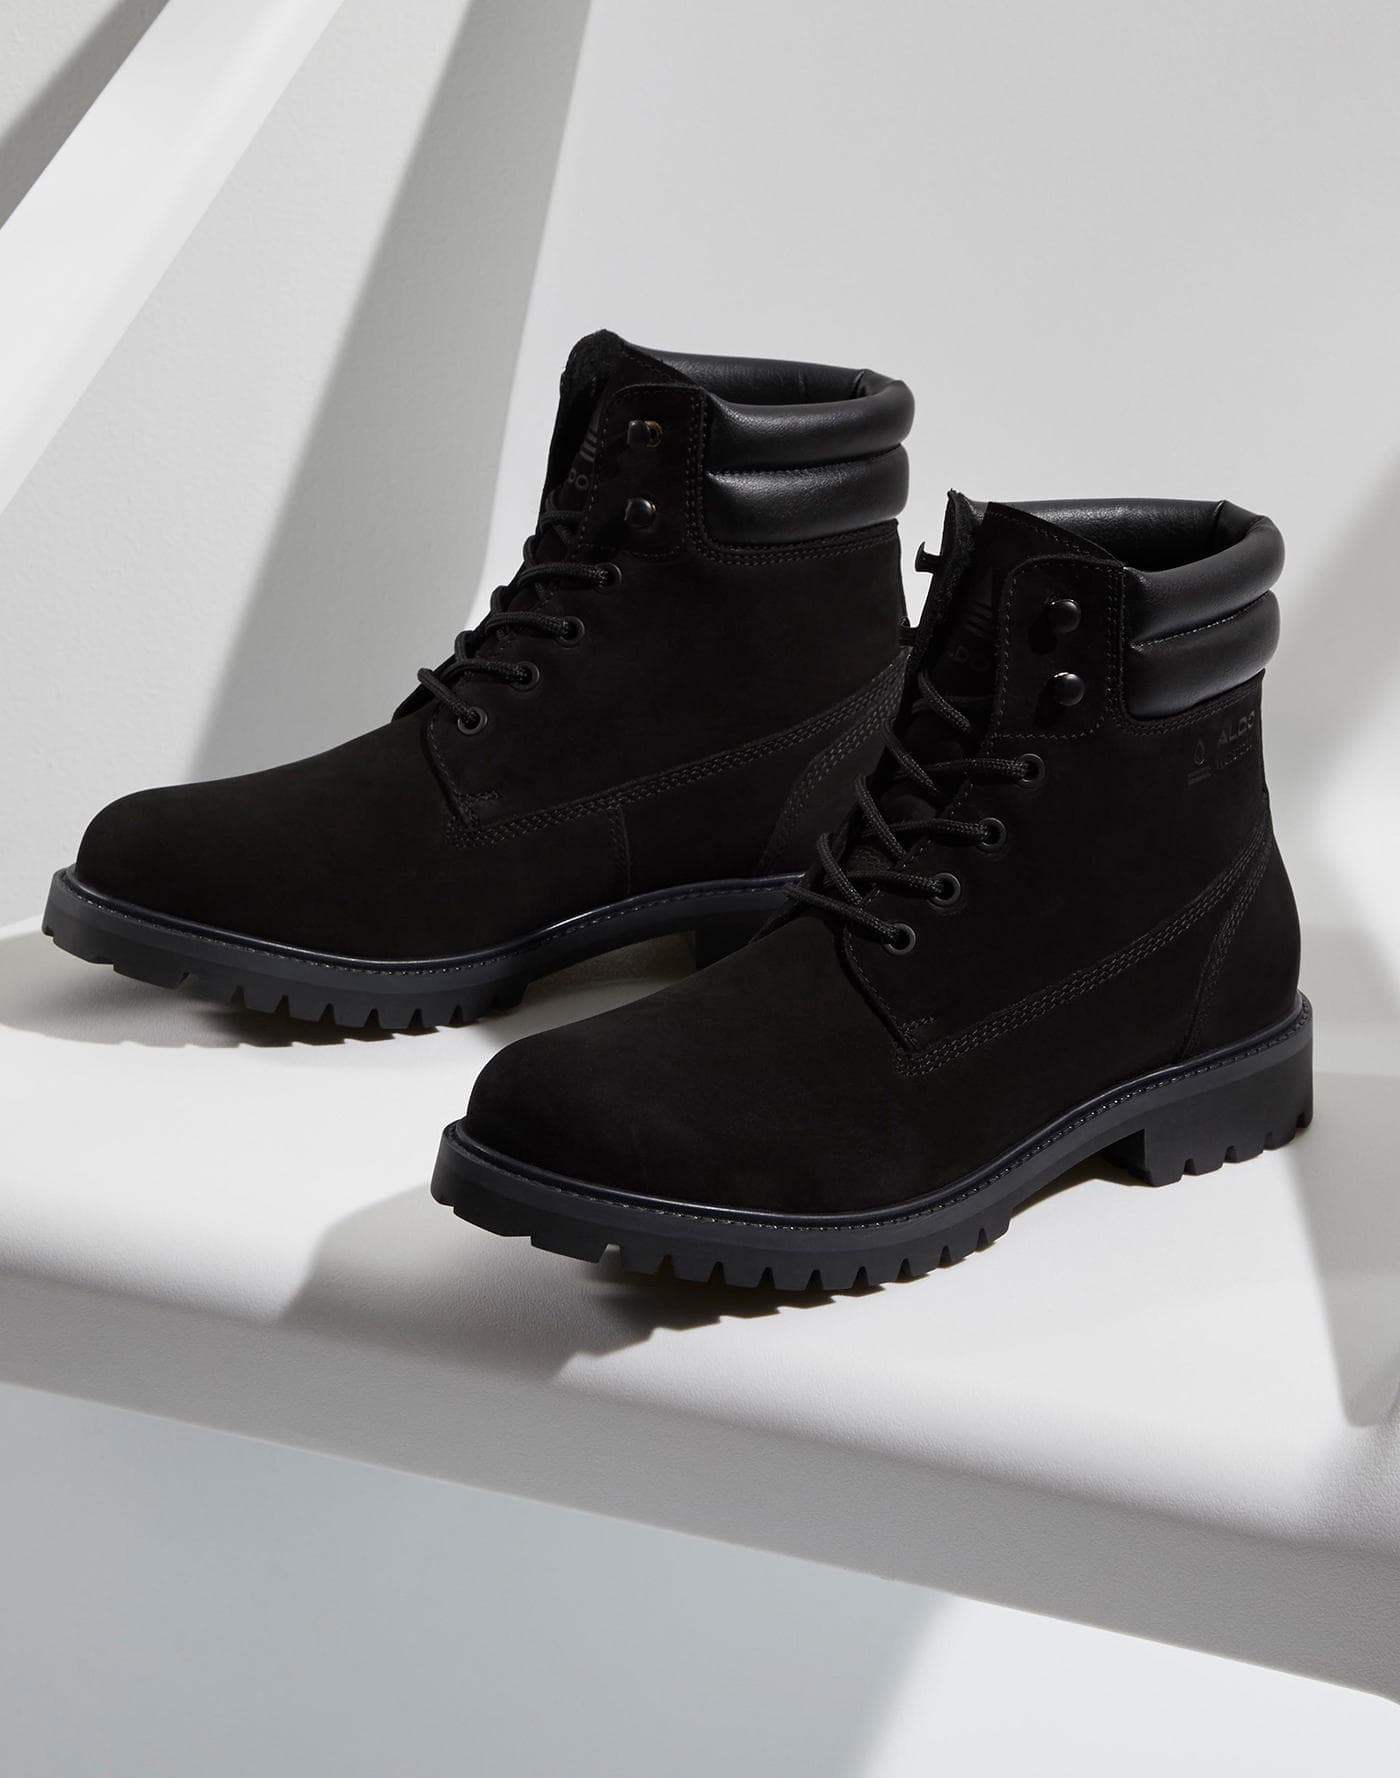 Men's Boots | Formal & Casual | ALDO Canada | ALDO Canada